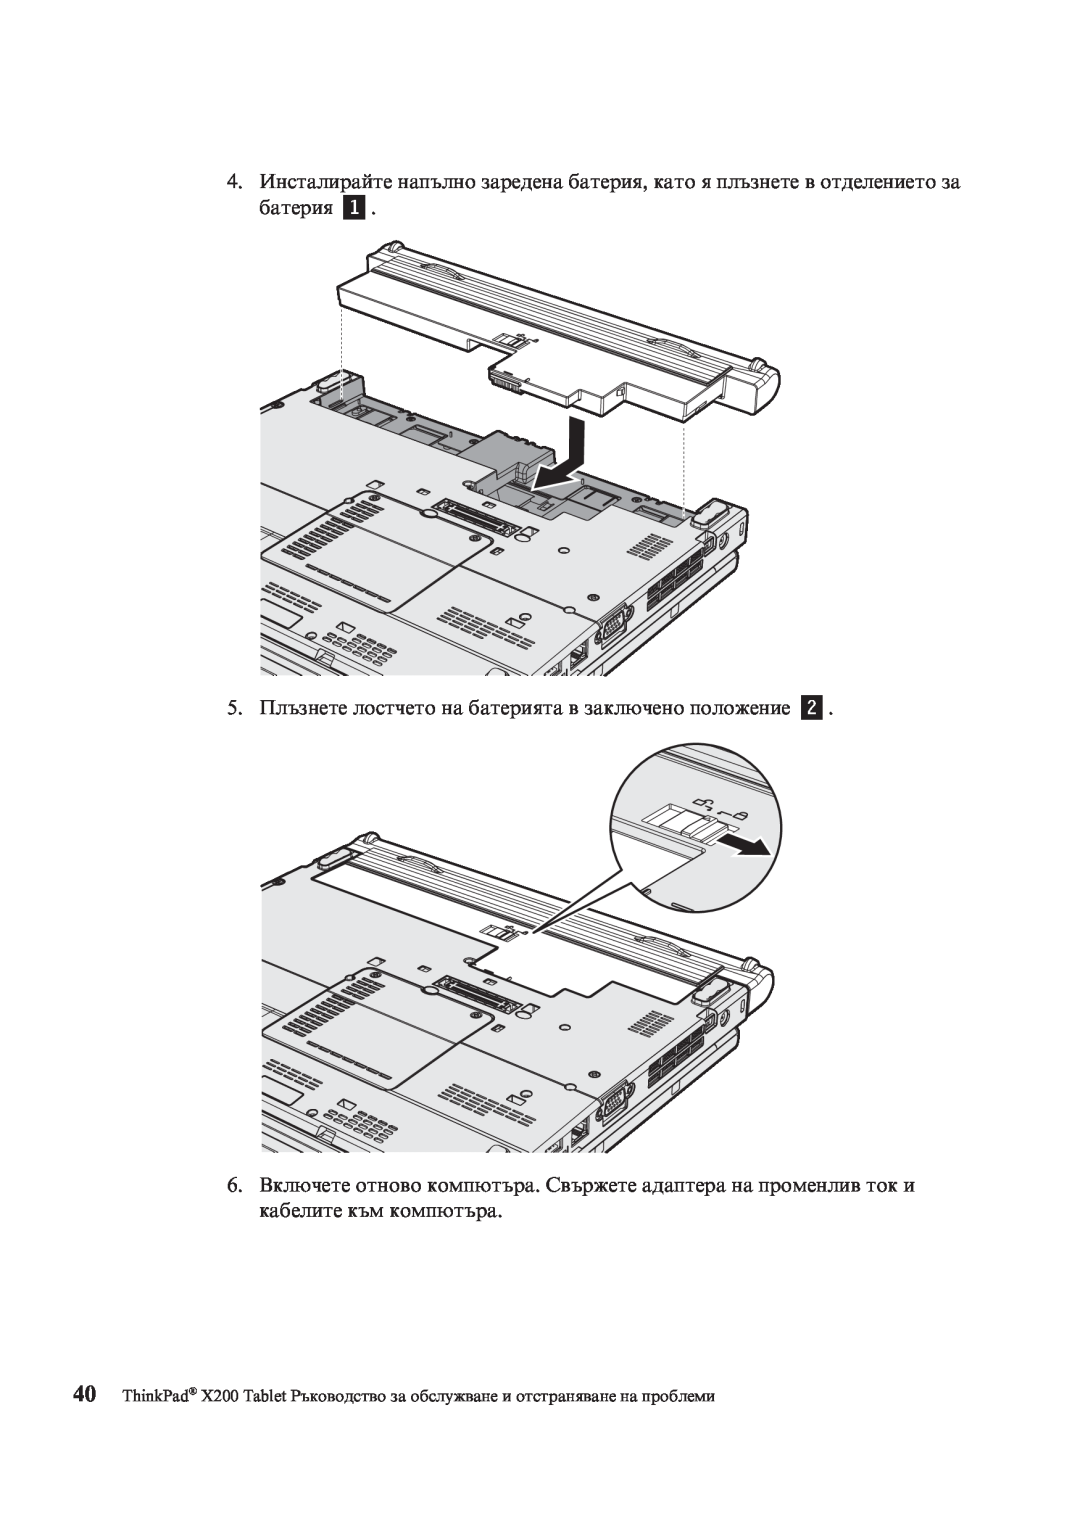 Lenovo X200 manual 4.Инсталирайте напълно заредена батерия, като я плъзнете в отделението за батерия 1 